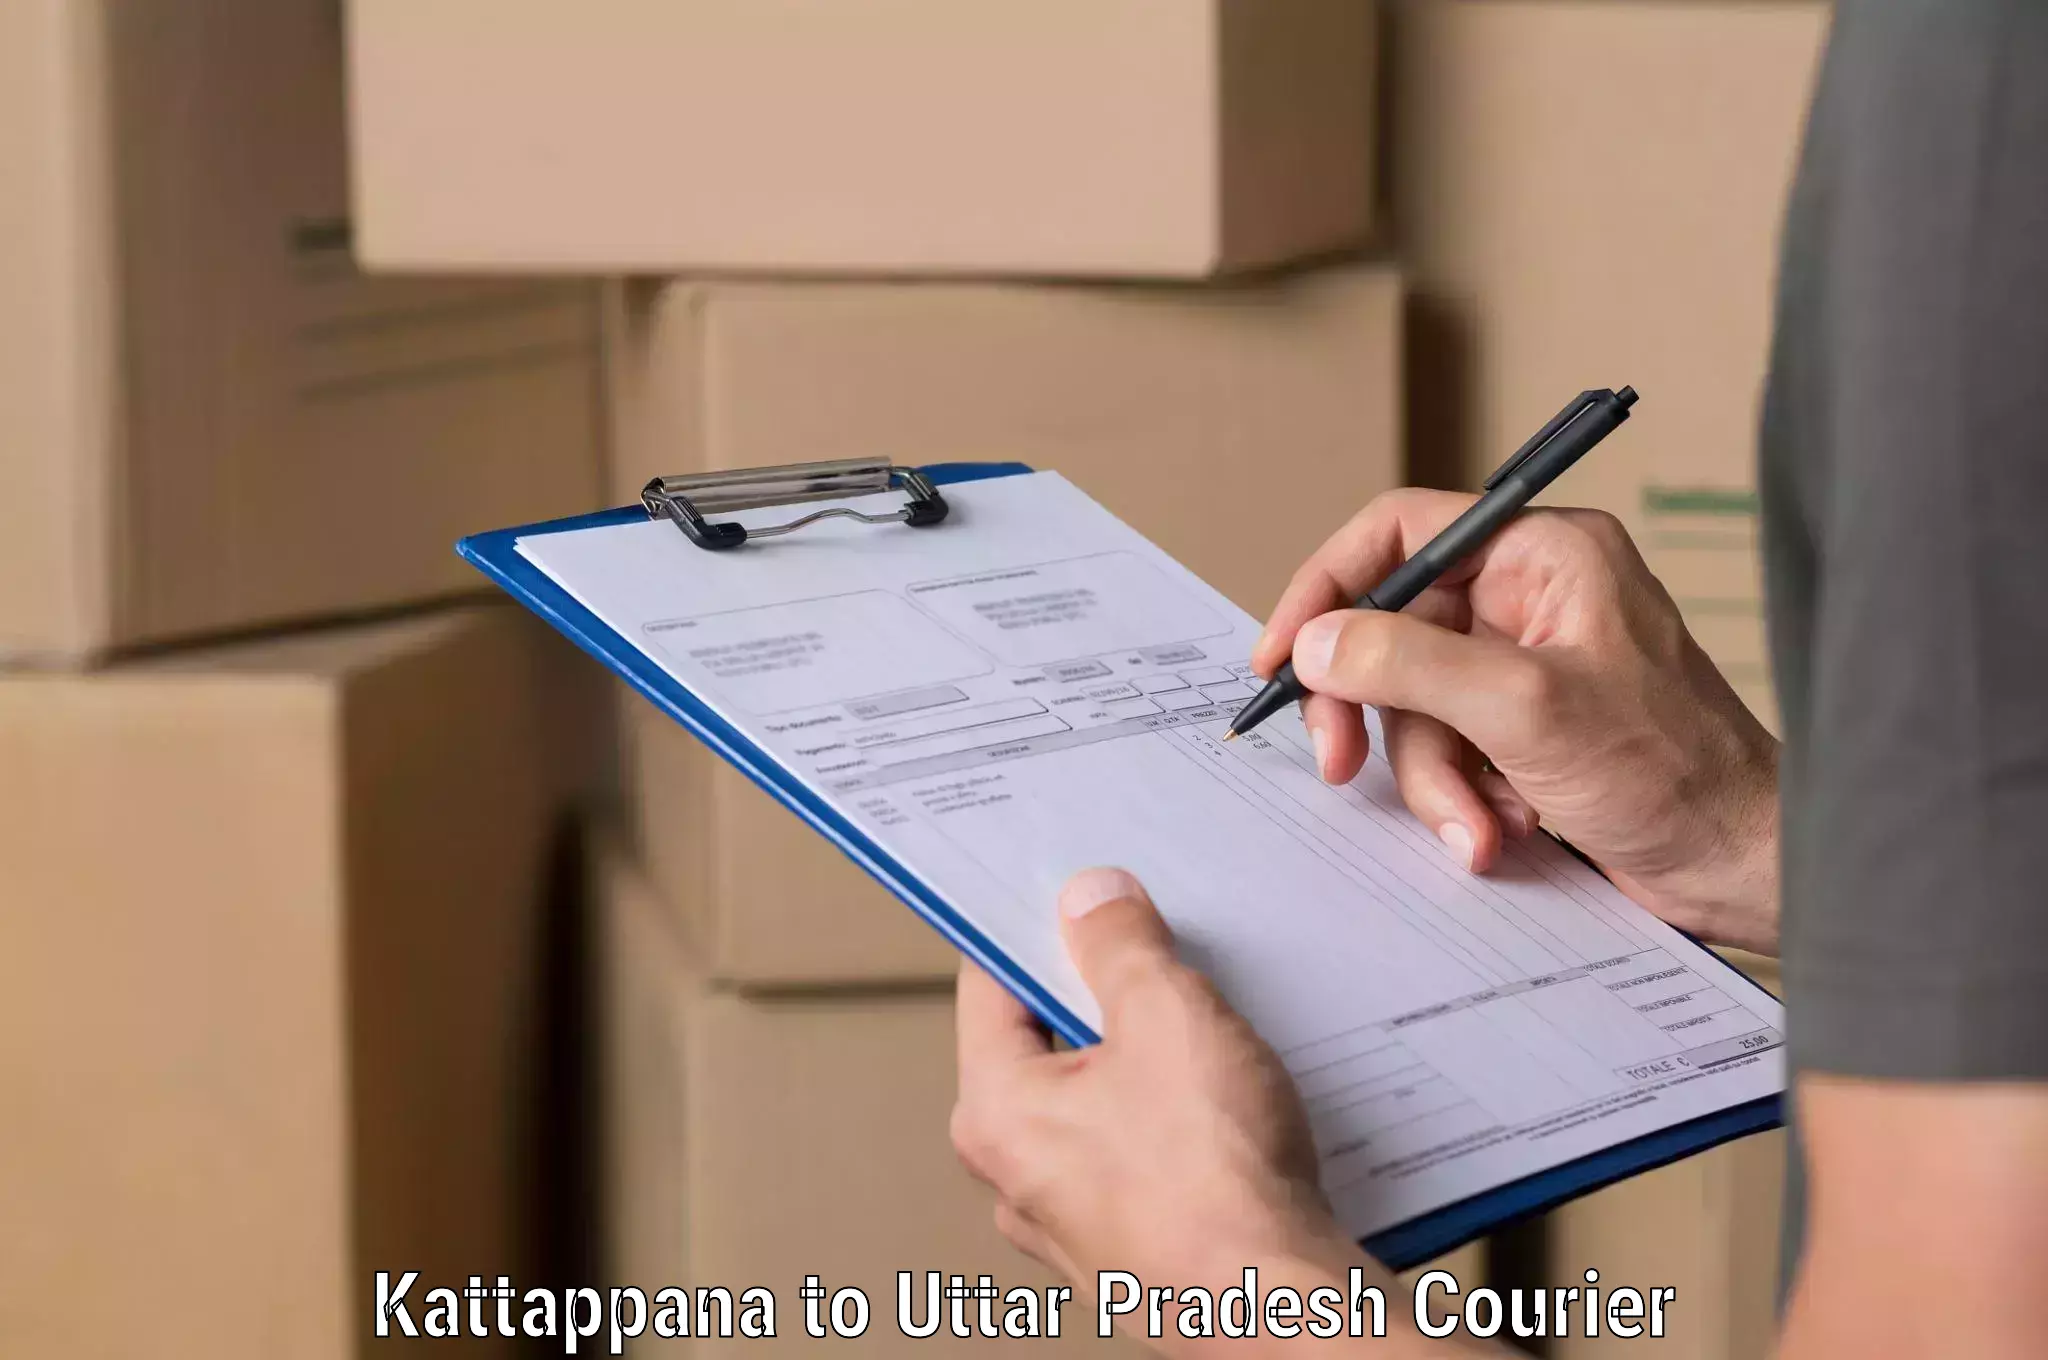 Tailored shipping services Kattappana to Sikandra Rao